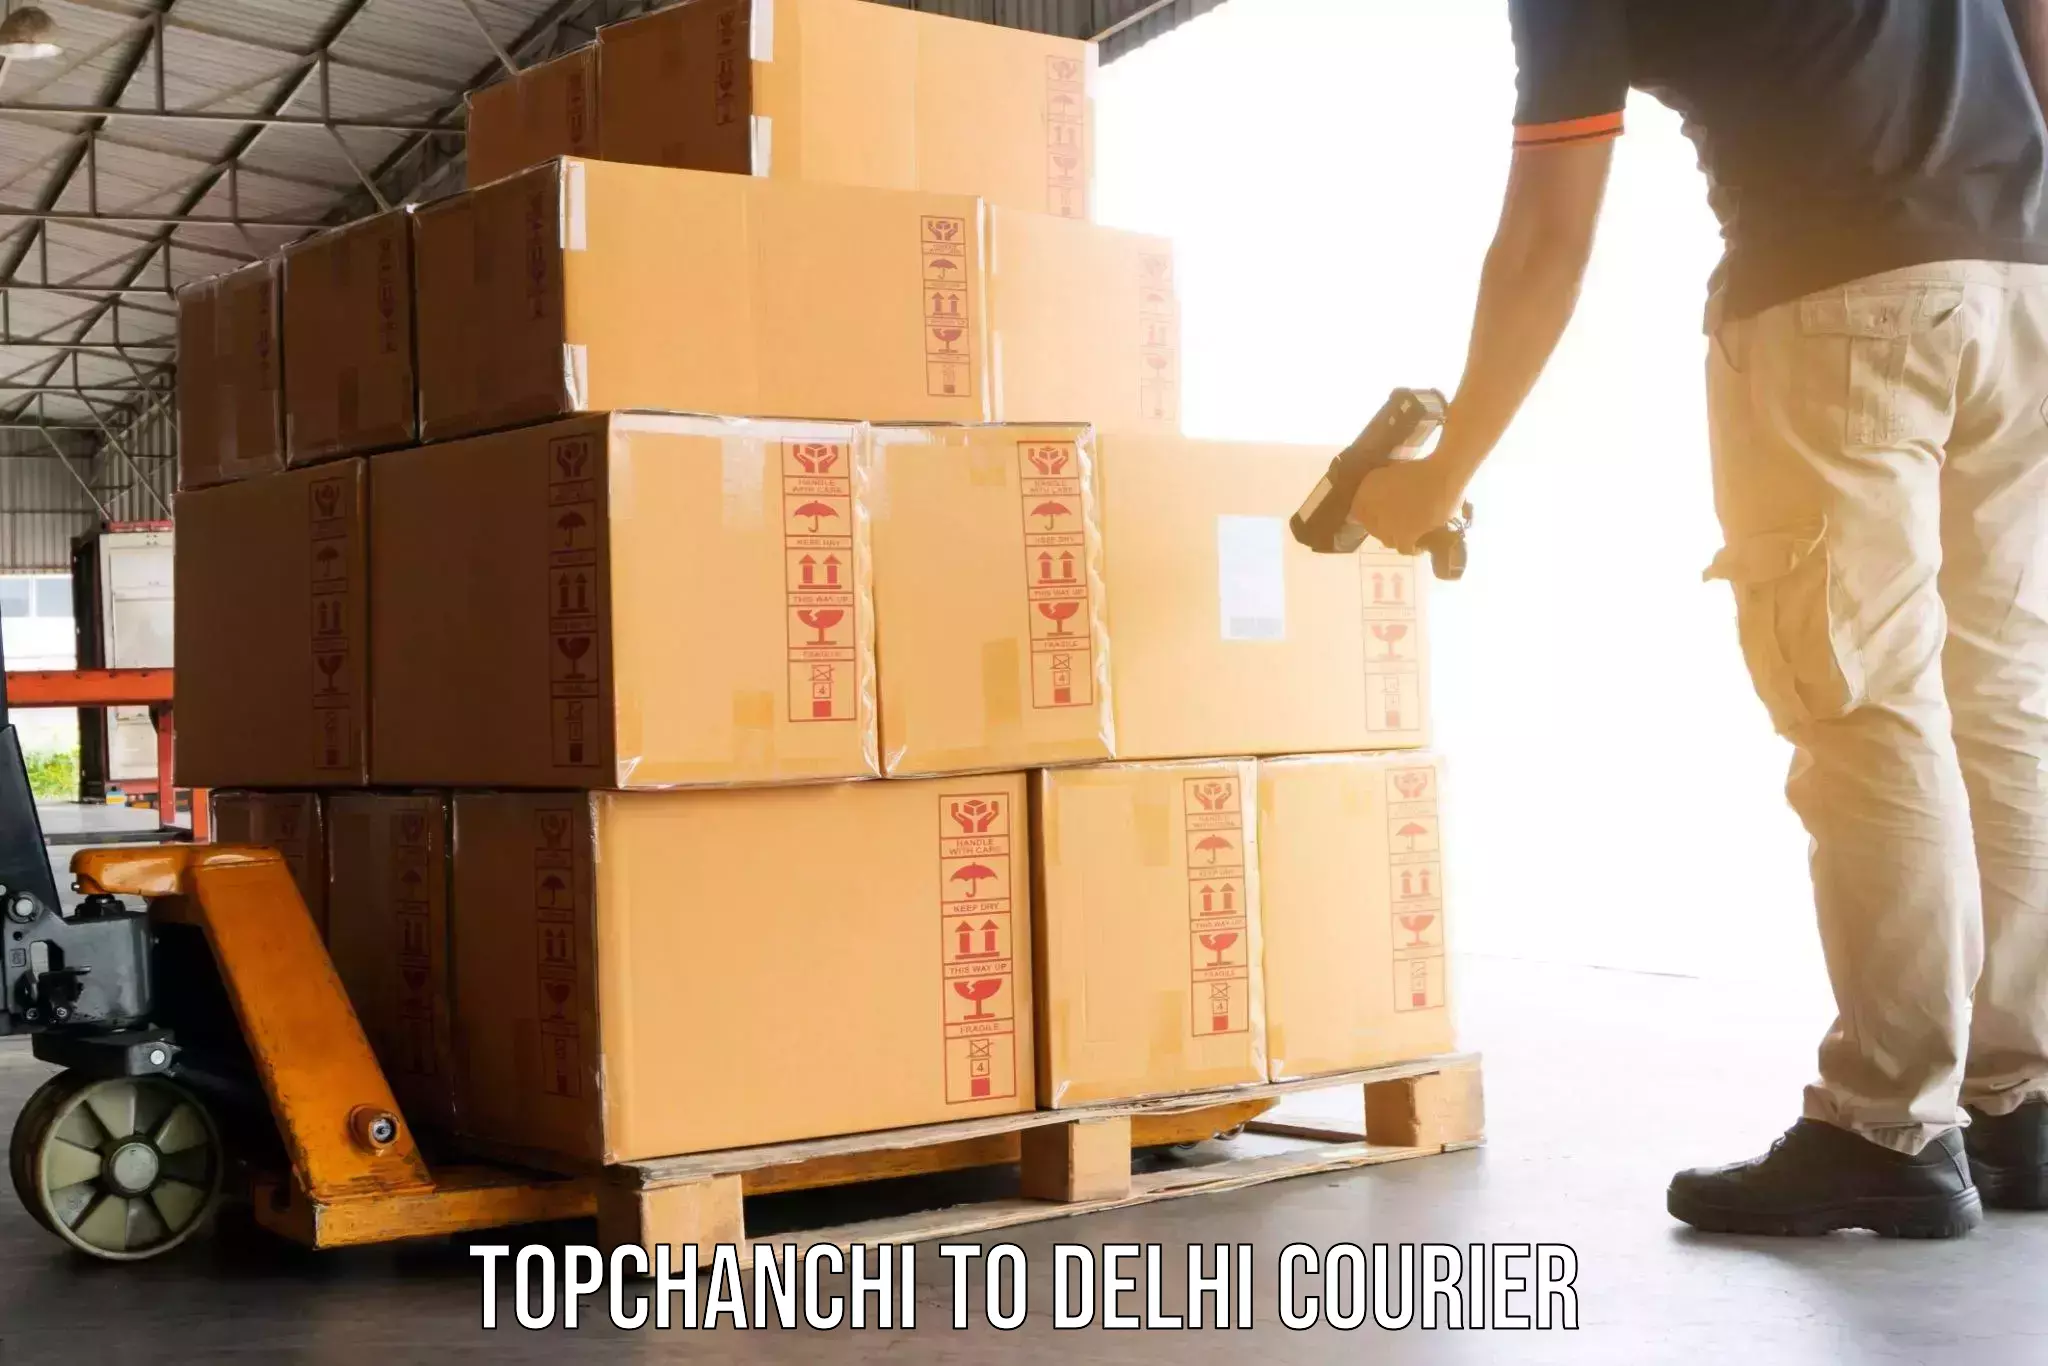 Efficient moving and packing Topchanchi to Sarojini Nagar